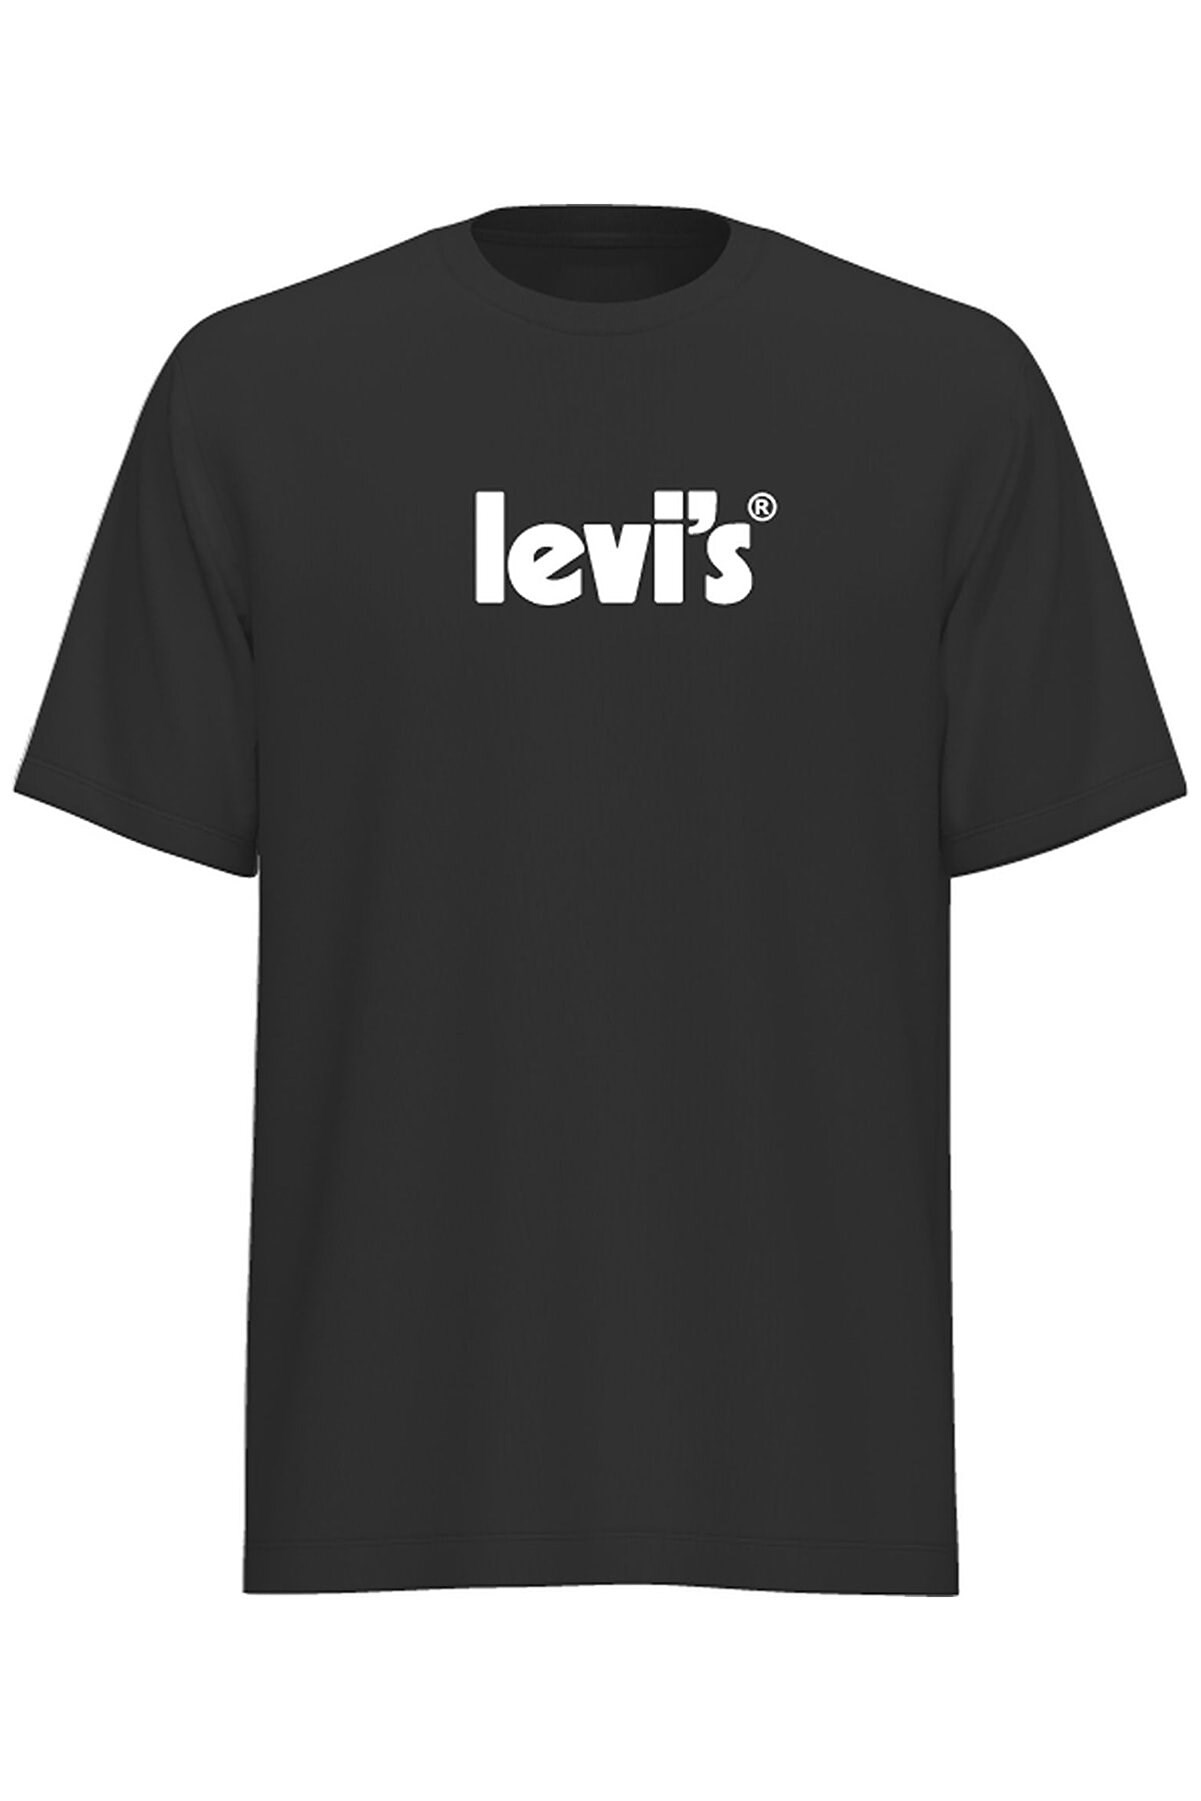 Levis Erkek T-Shirt A2082-0030 